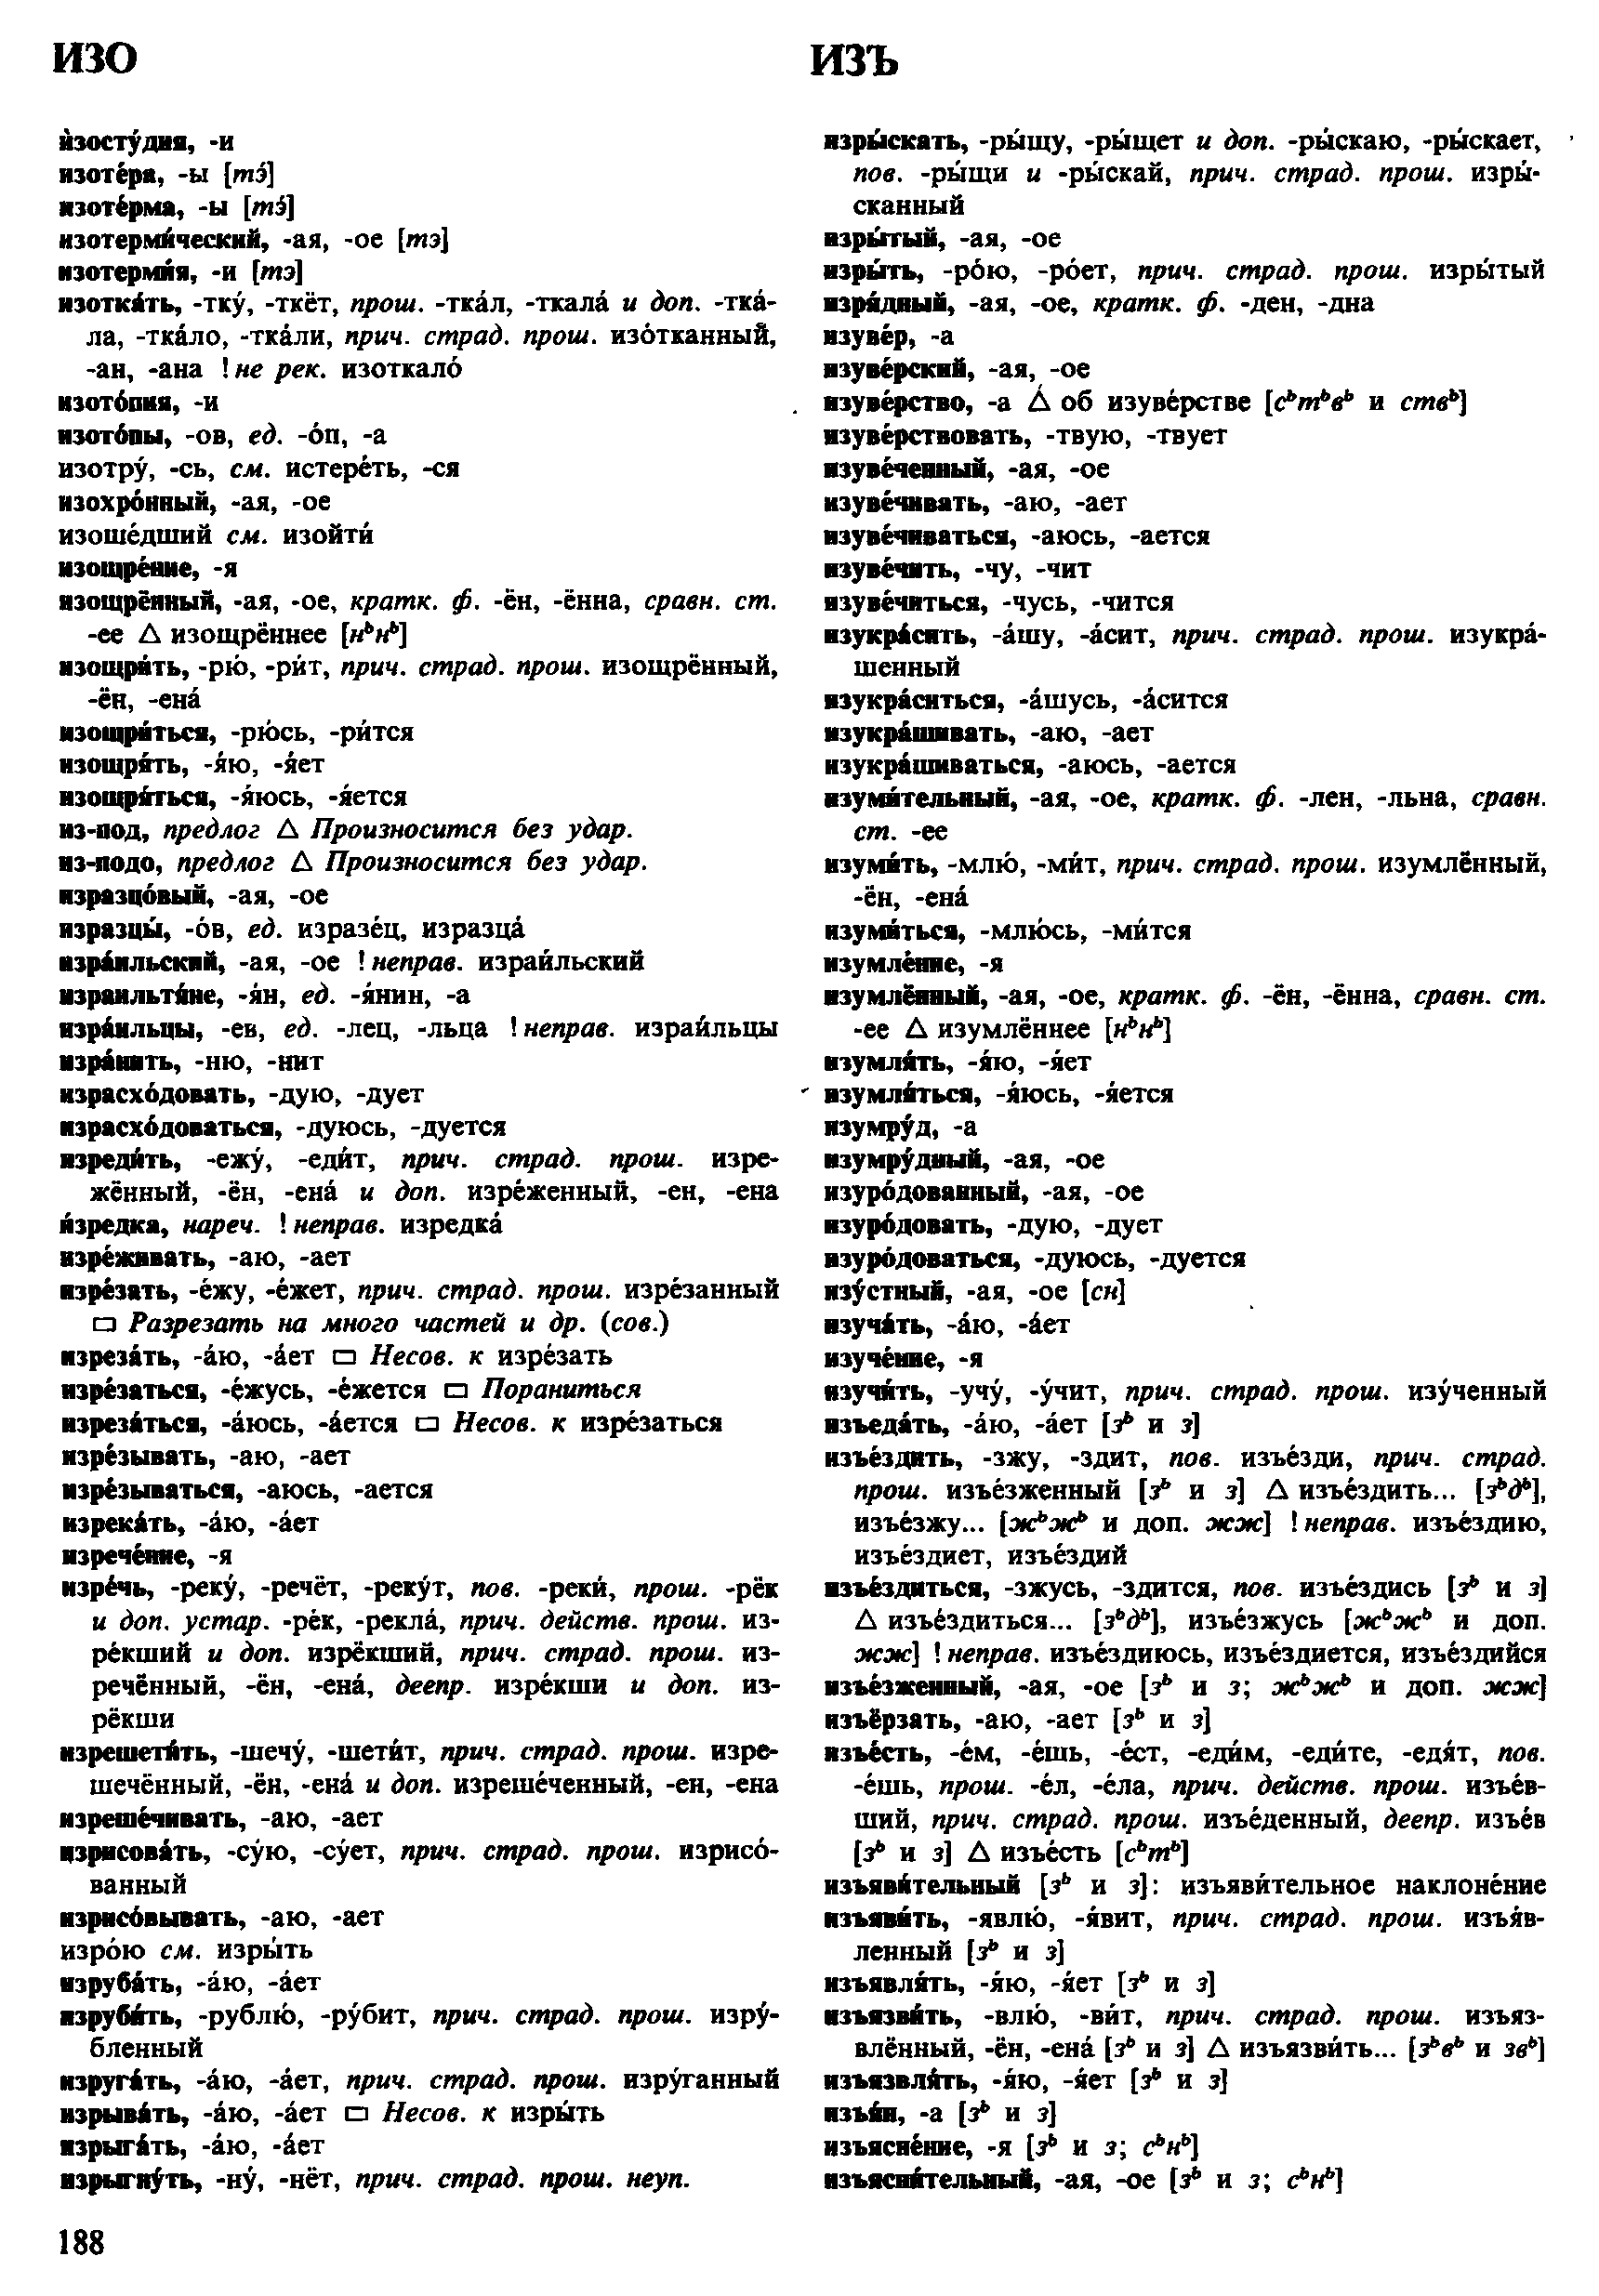 Фотокопия pdf / скан страницы 188 орфоэпического словаря под редакцией Аванесова (4 издание, 1988 год)